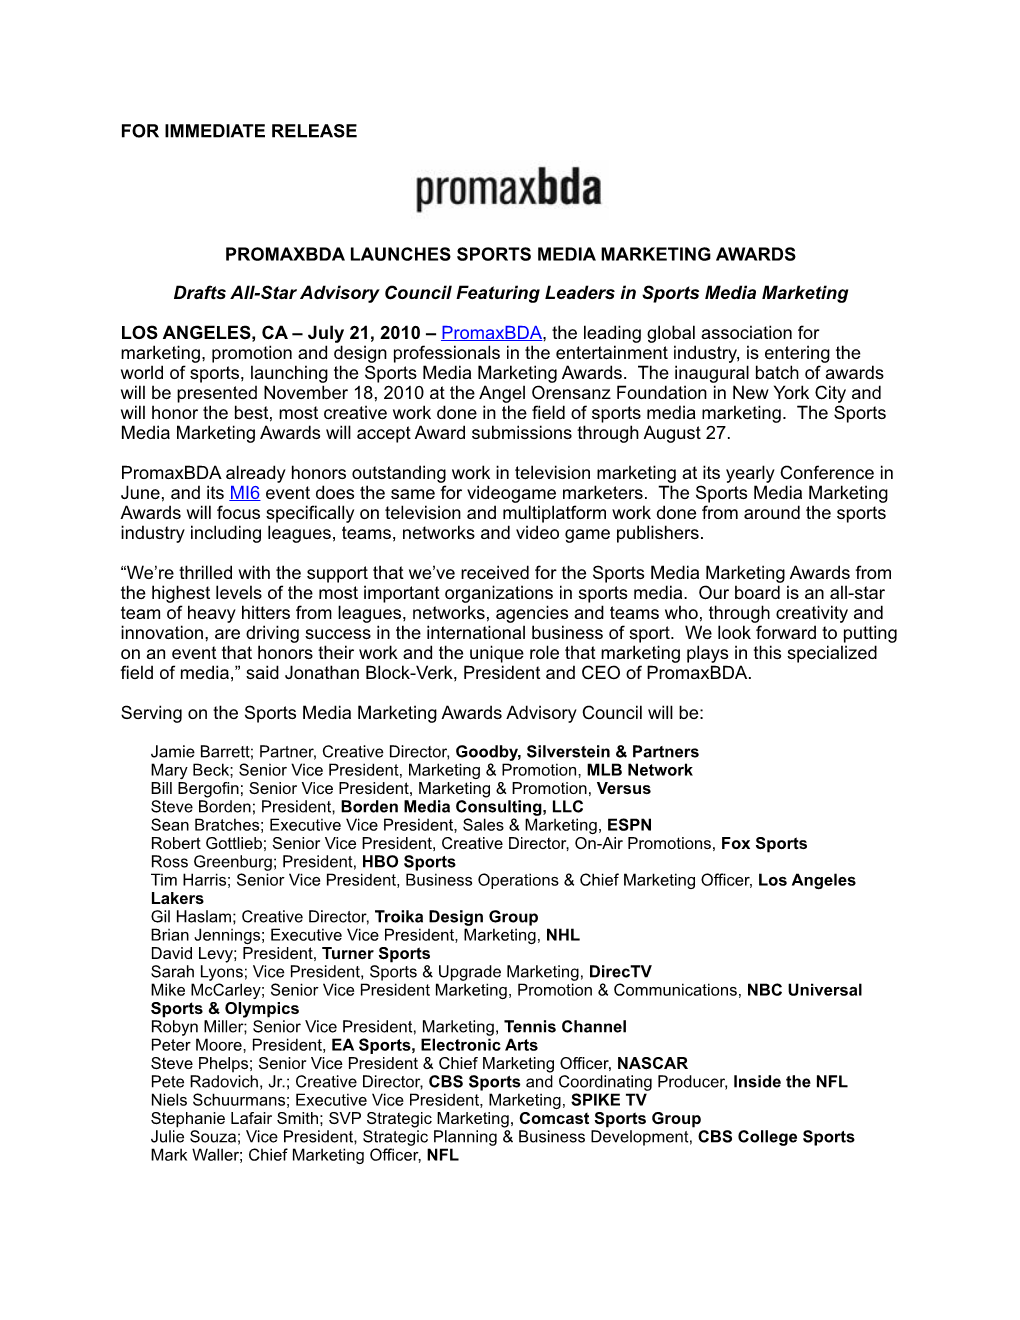 For Immediate Release Promaxbda Launches